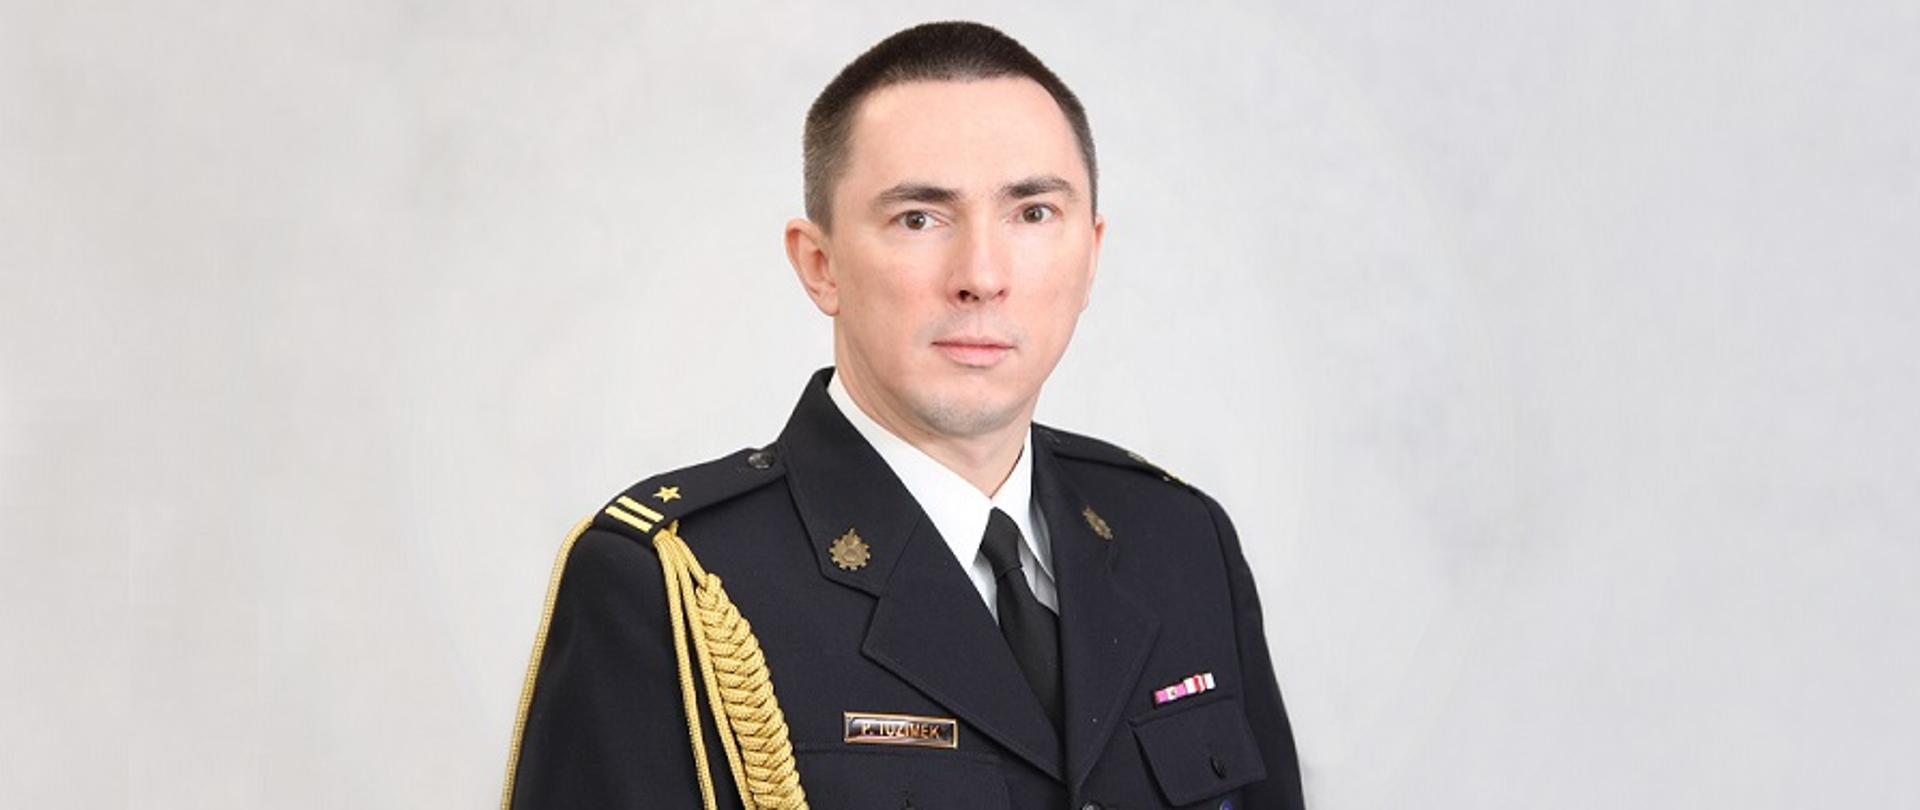 Piotr Tuzimek w mundurze galowym na janym tle